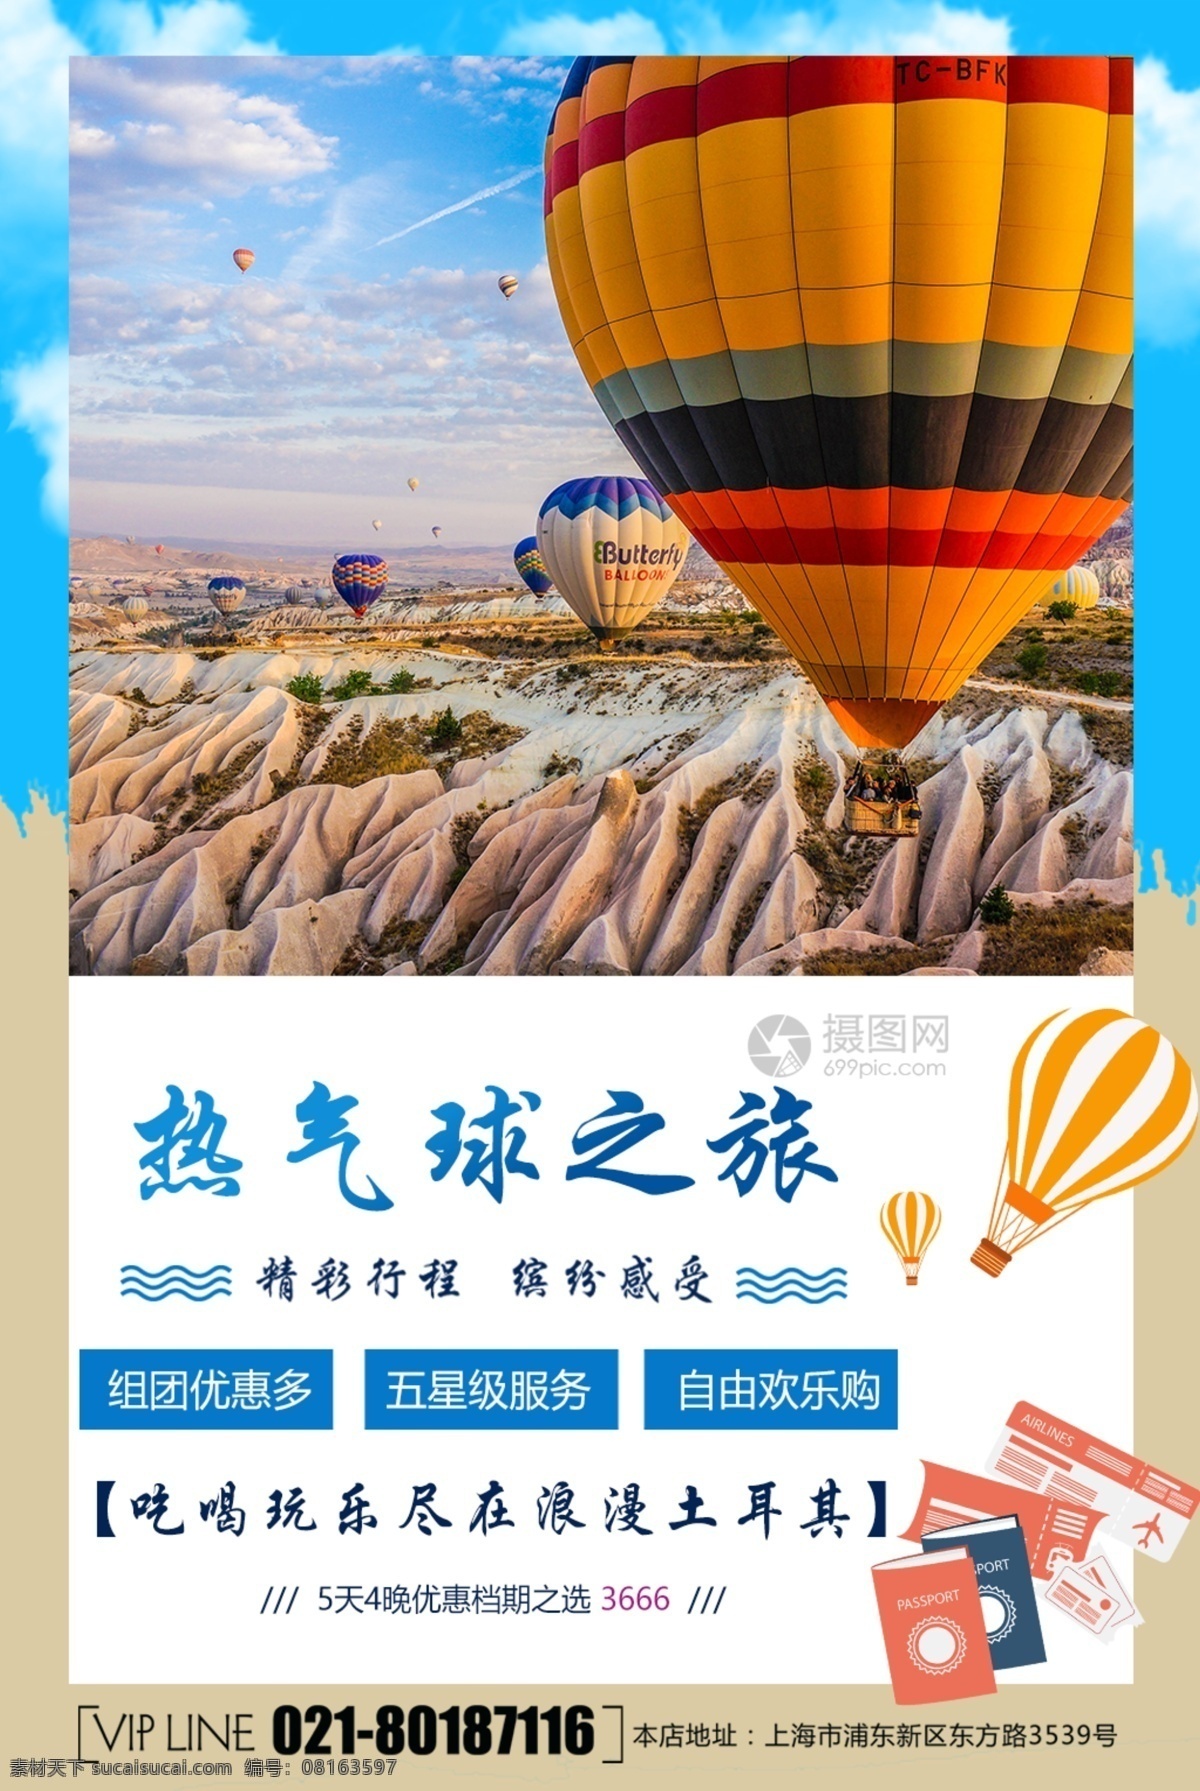 浪漫 土耳其 热气球 之旅 旅游 海报 热气球之旅 旅游海报